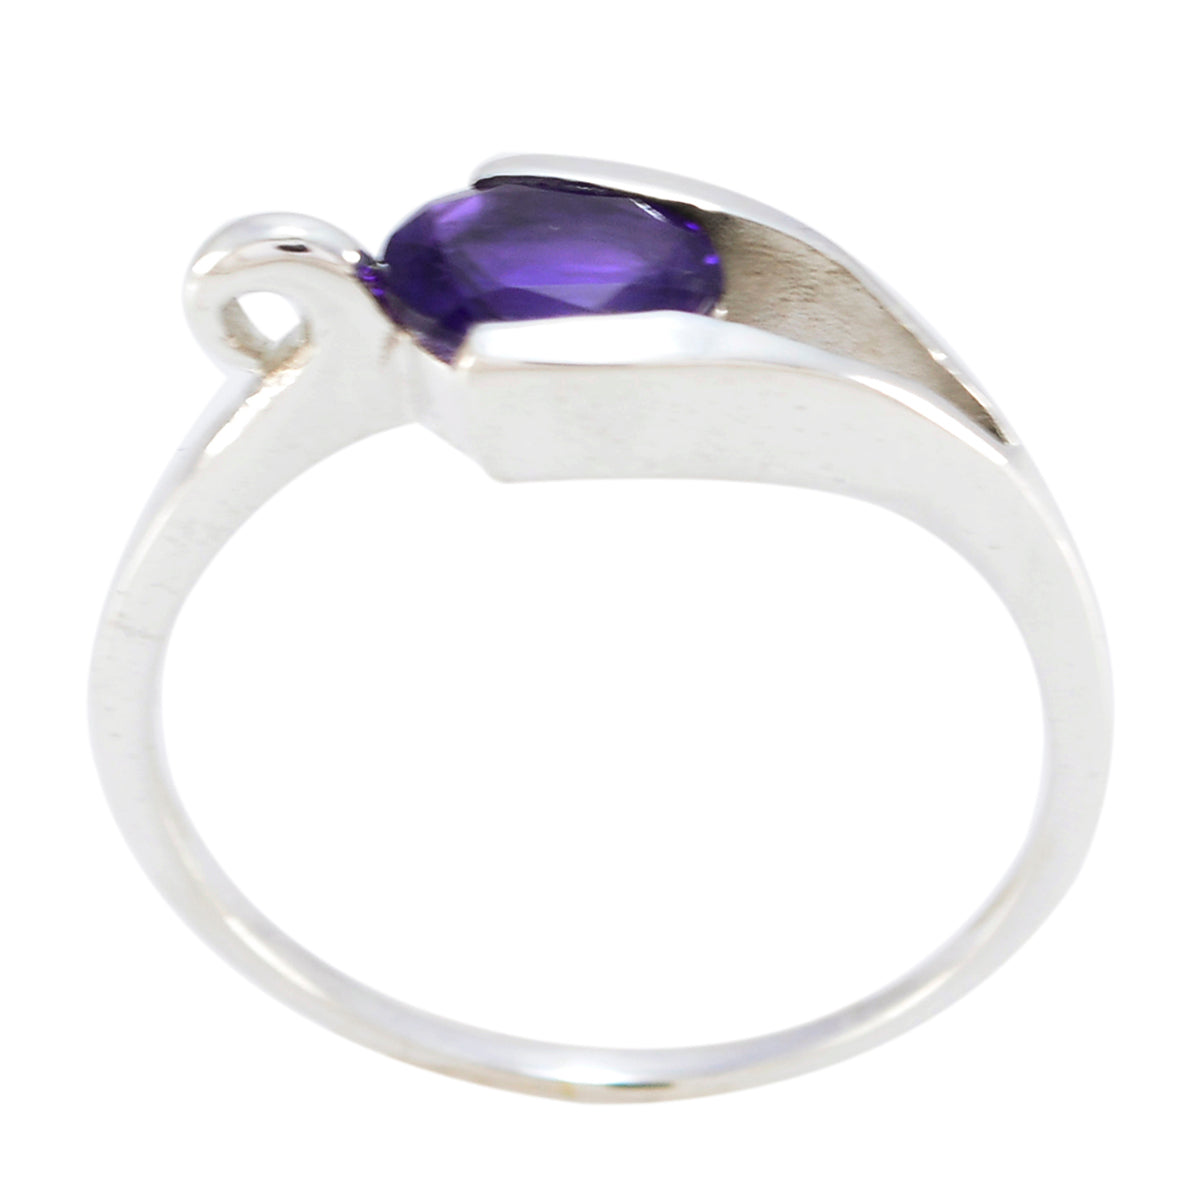 Riyo Fair Gemstones Amethyst 925 Sterling Silver Ring Anchor Jewelry